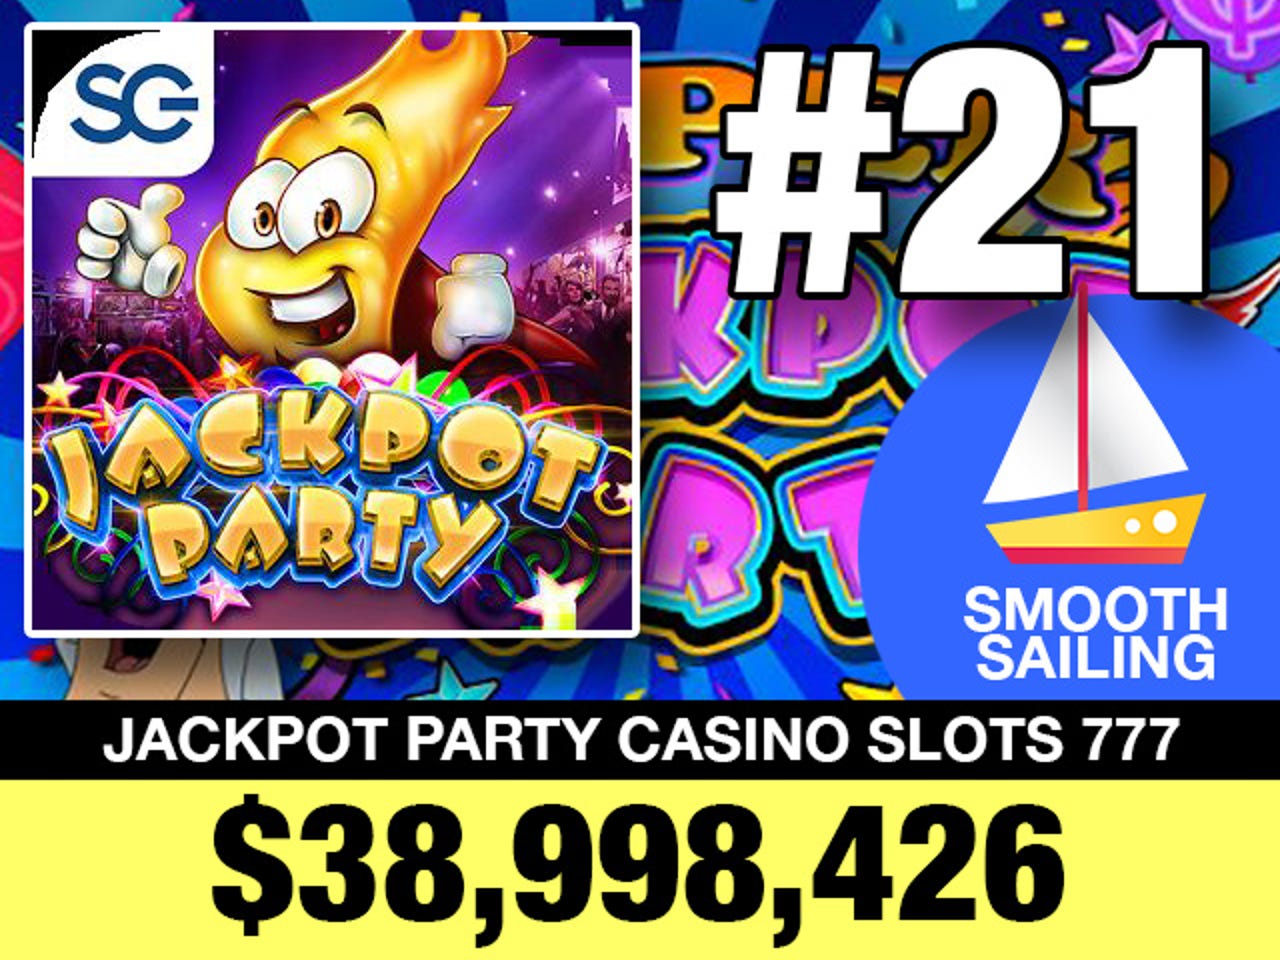 21-jackpot-party-casino-slots-777.jpg